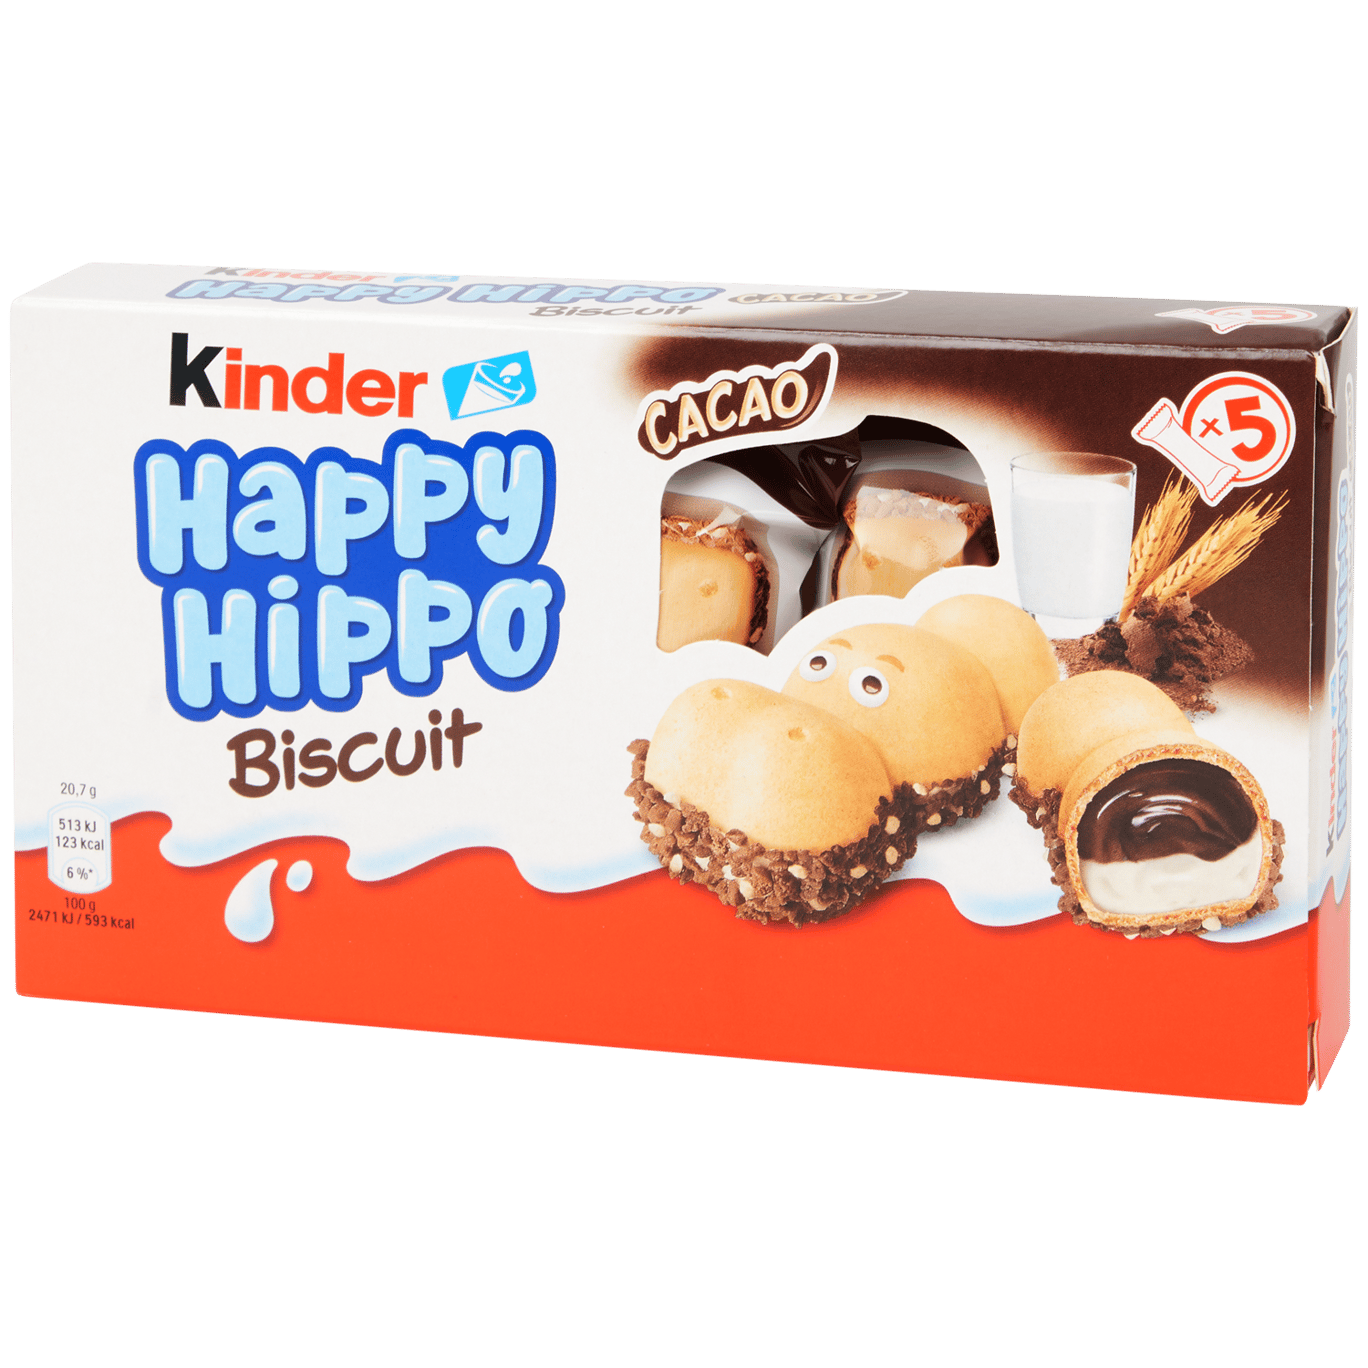 Kinder Happy Hippo biscuit